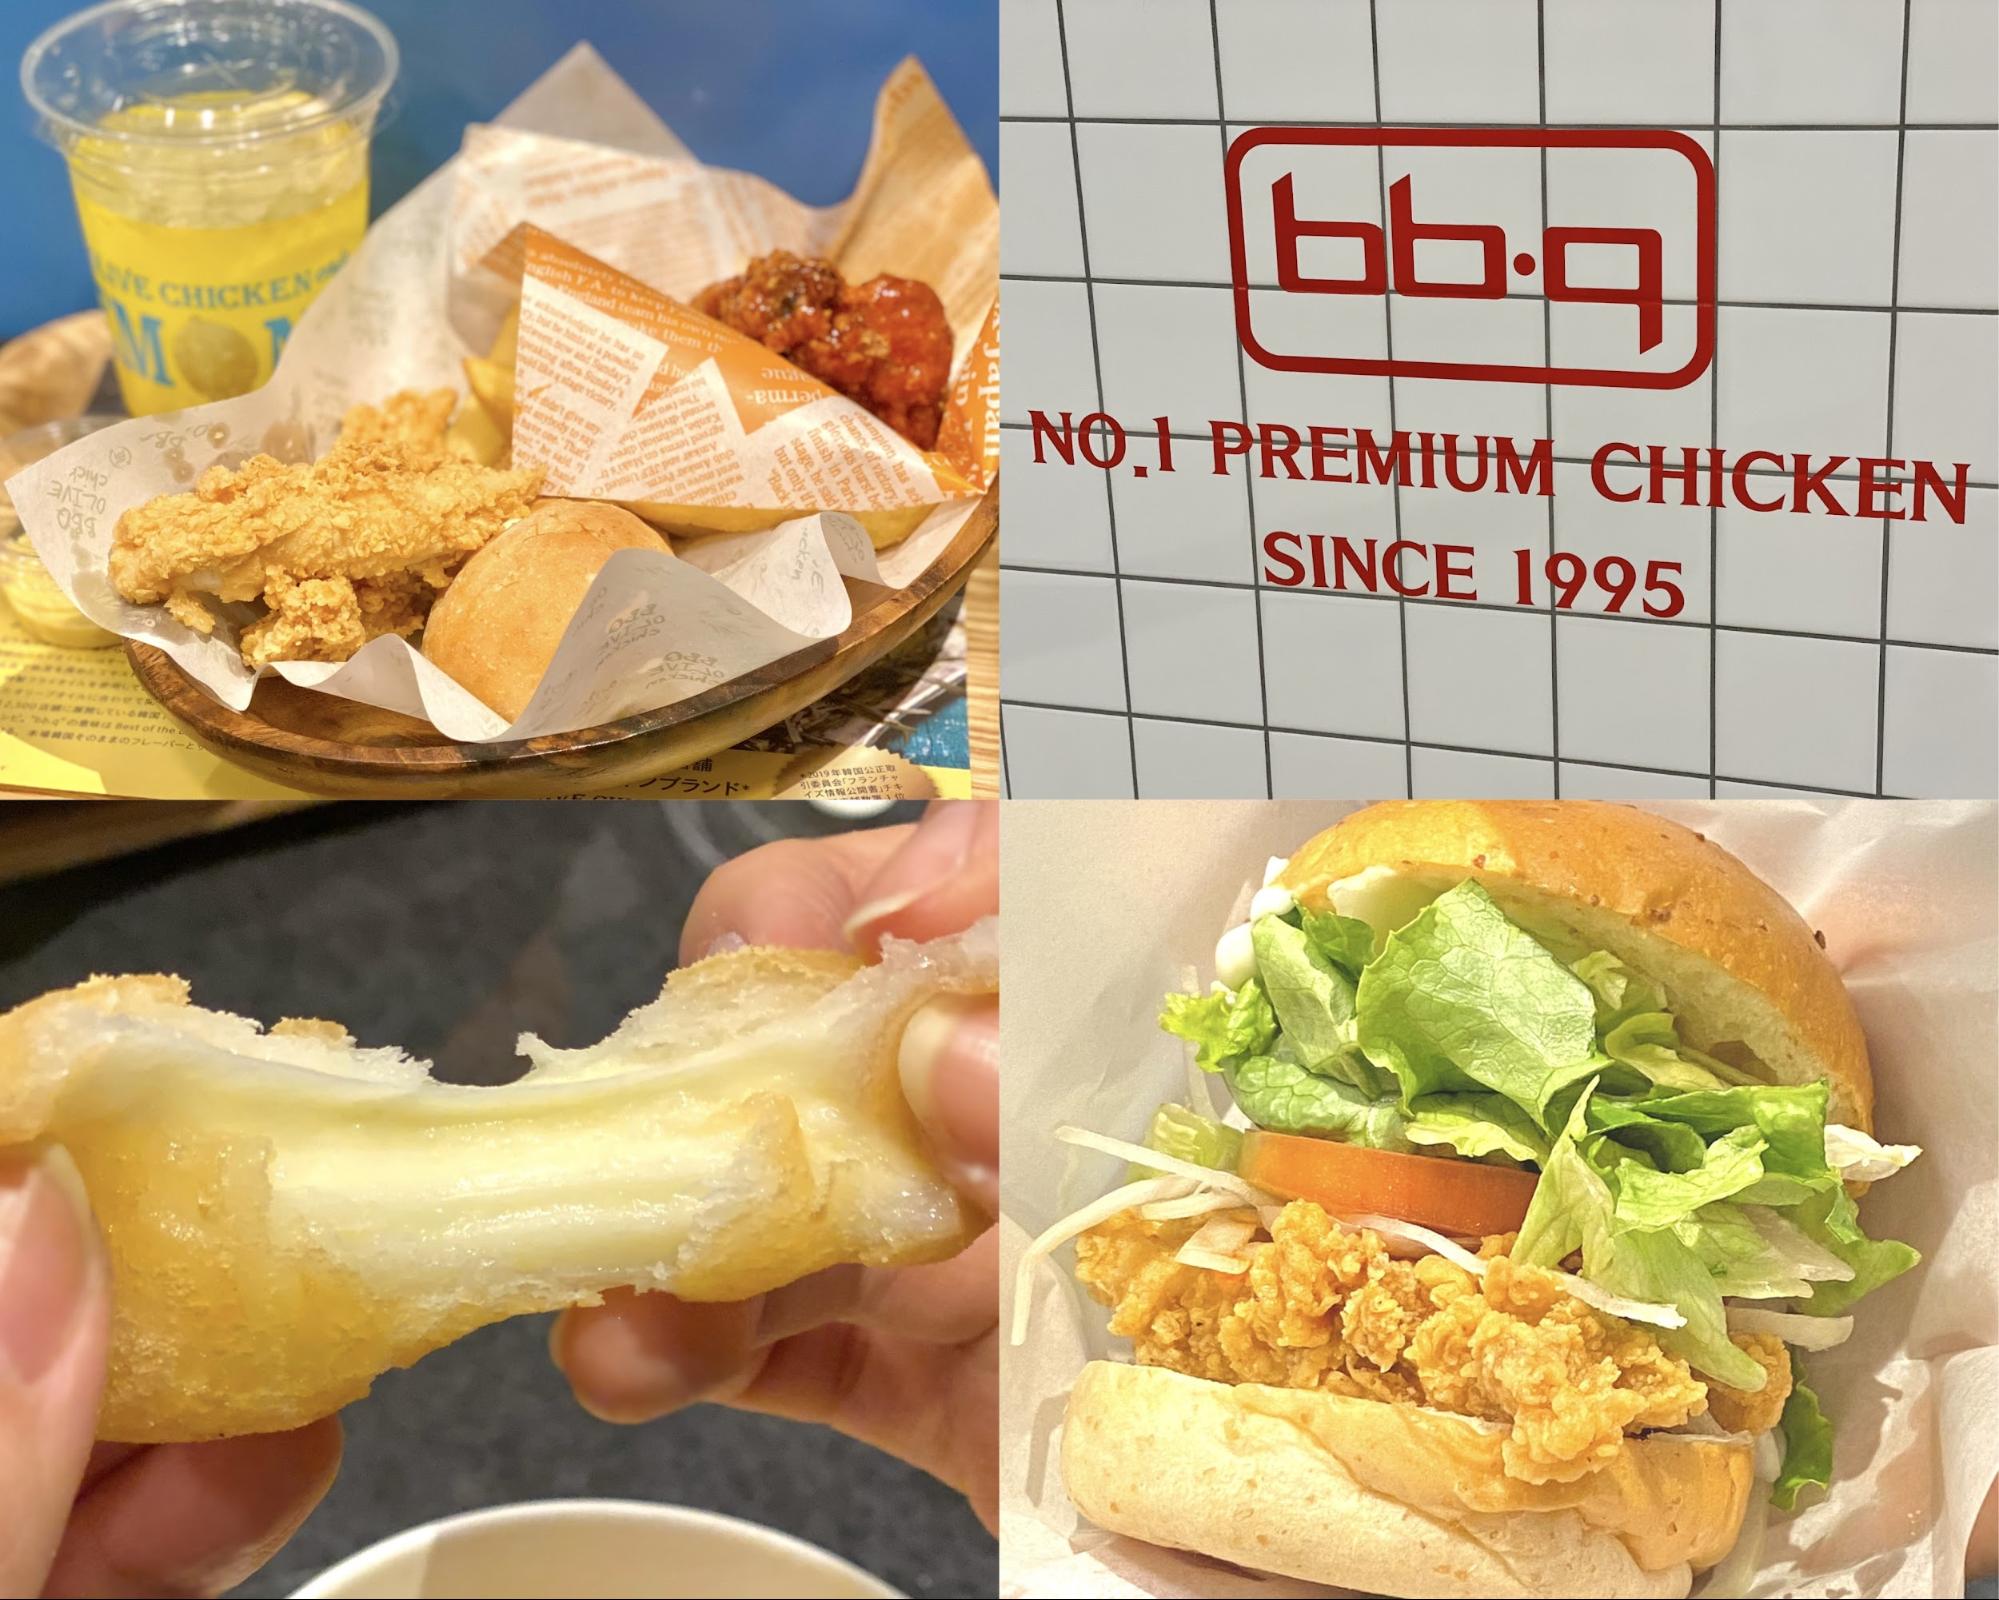 大受欢迎的韩国鸡肉“bb.q橄榄枝咖啡”、空运韩国?!为您介绍人气菜品!